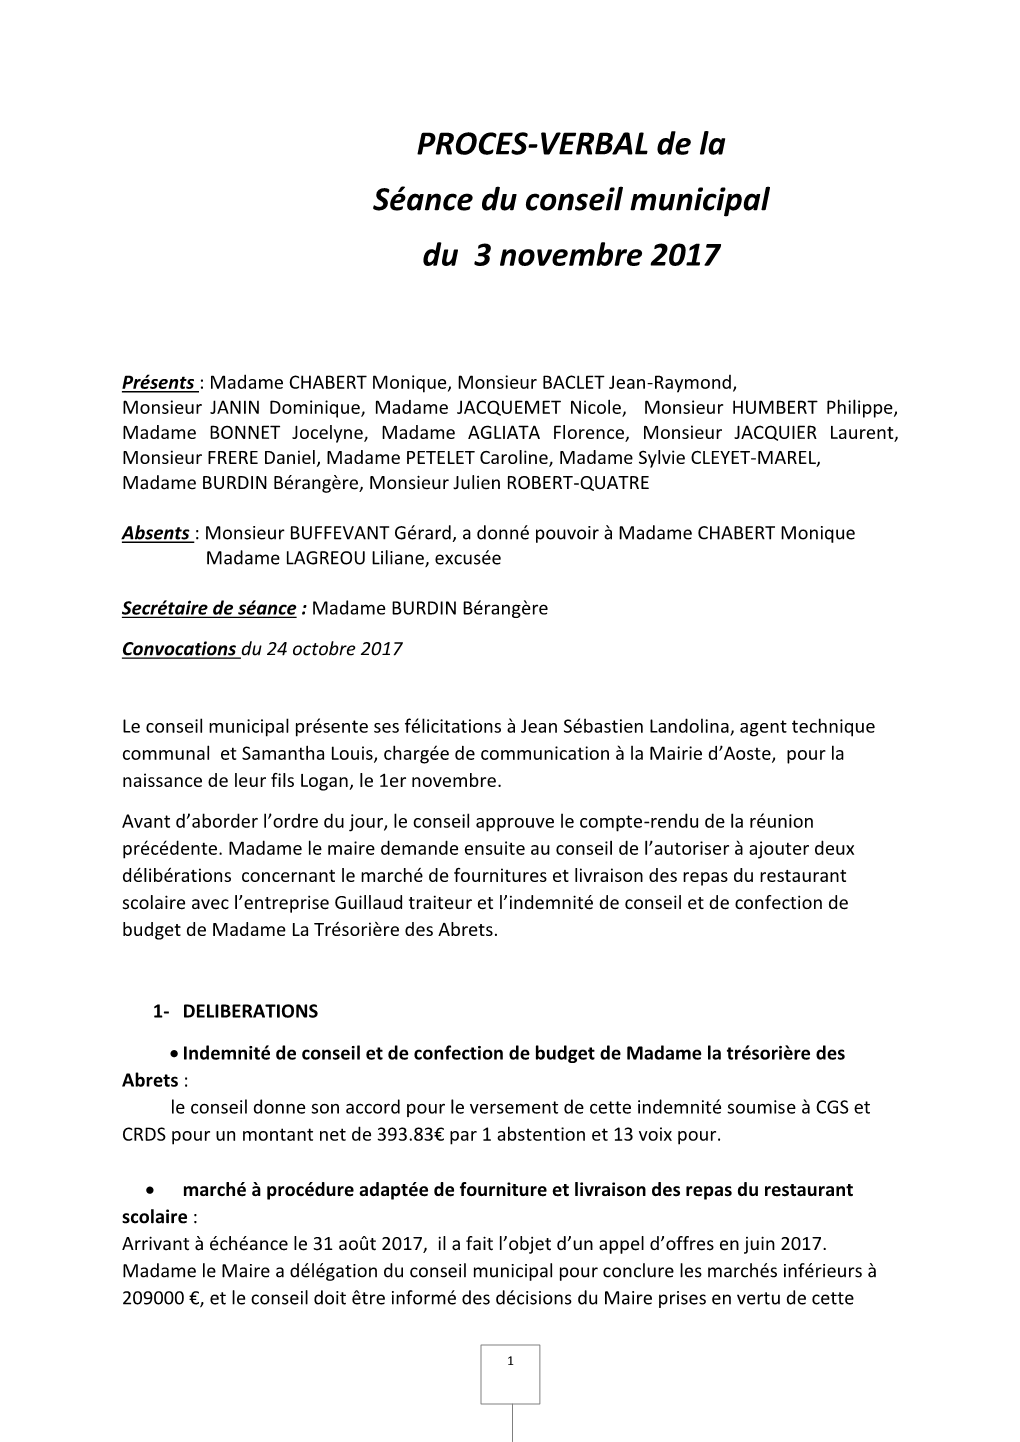 PROCES-VERBAL De La Séance Du Conseil Municipal Du 3 Novembre 2017